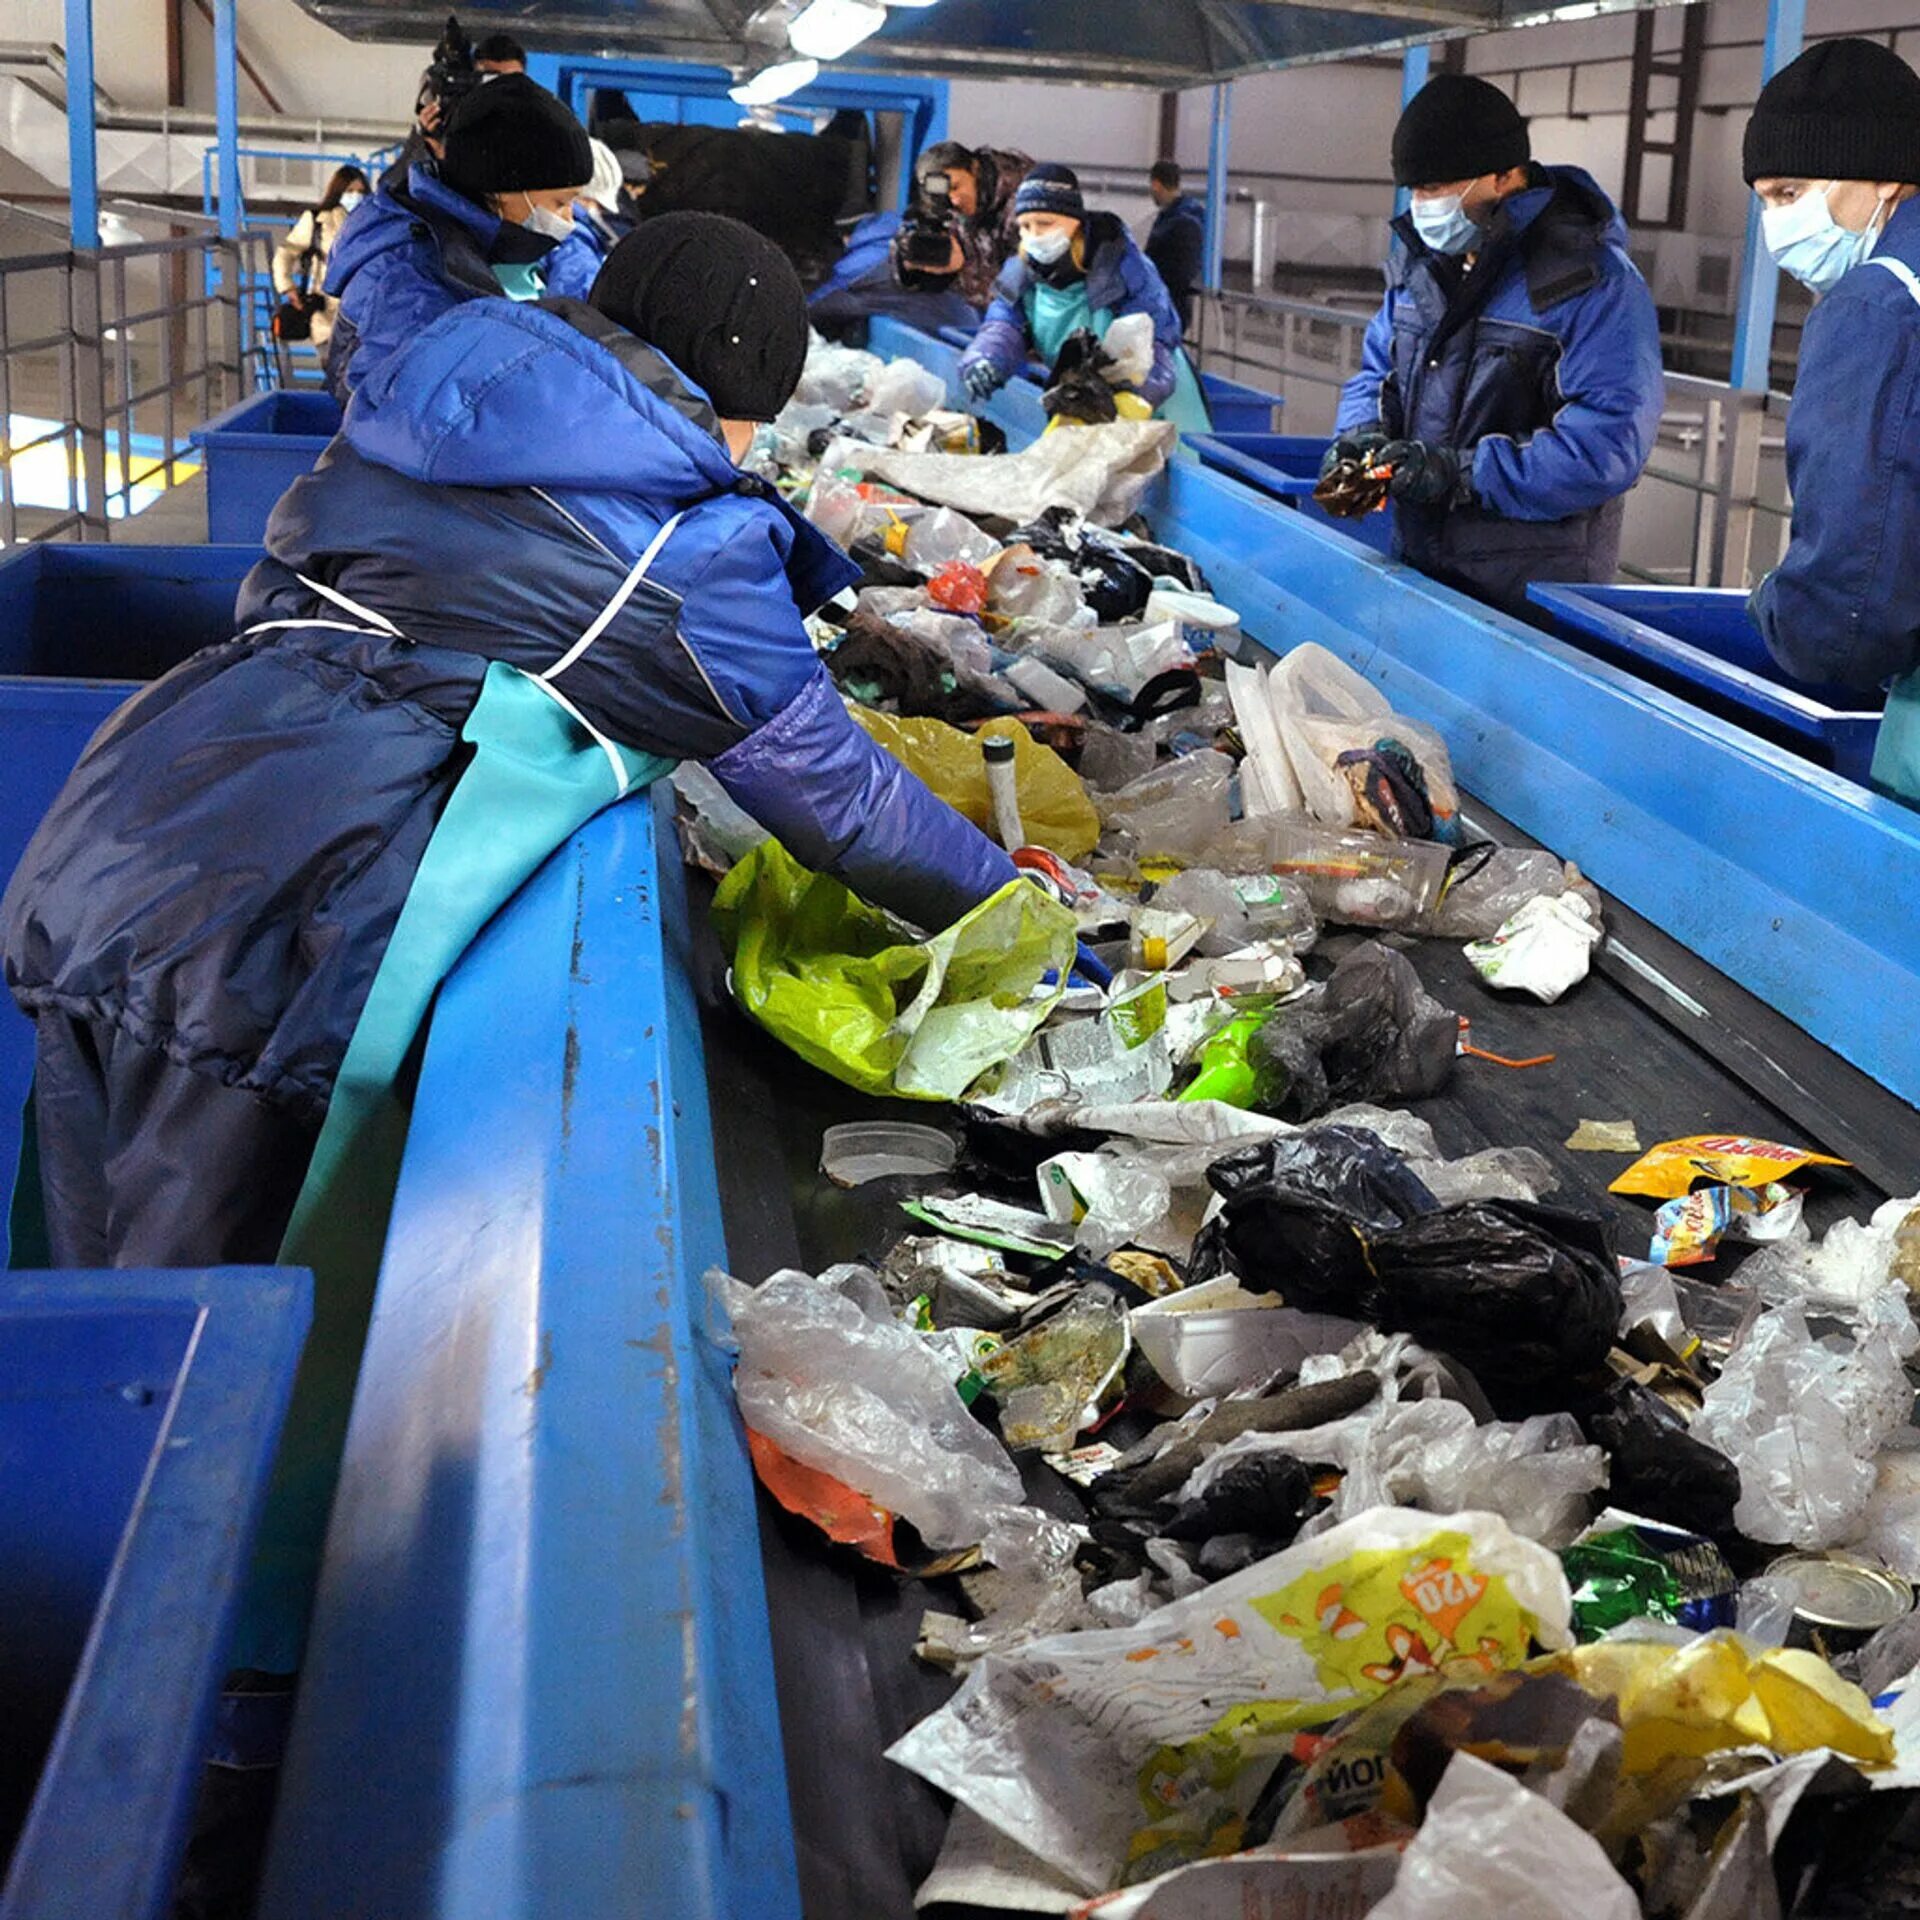 Обработка тко. Переработка мусора. Утилизация мусора в России. Переработка биомусора. Сортировка отходов на заводе.